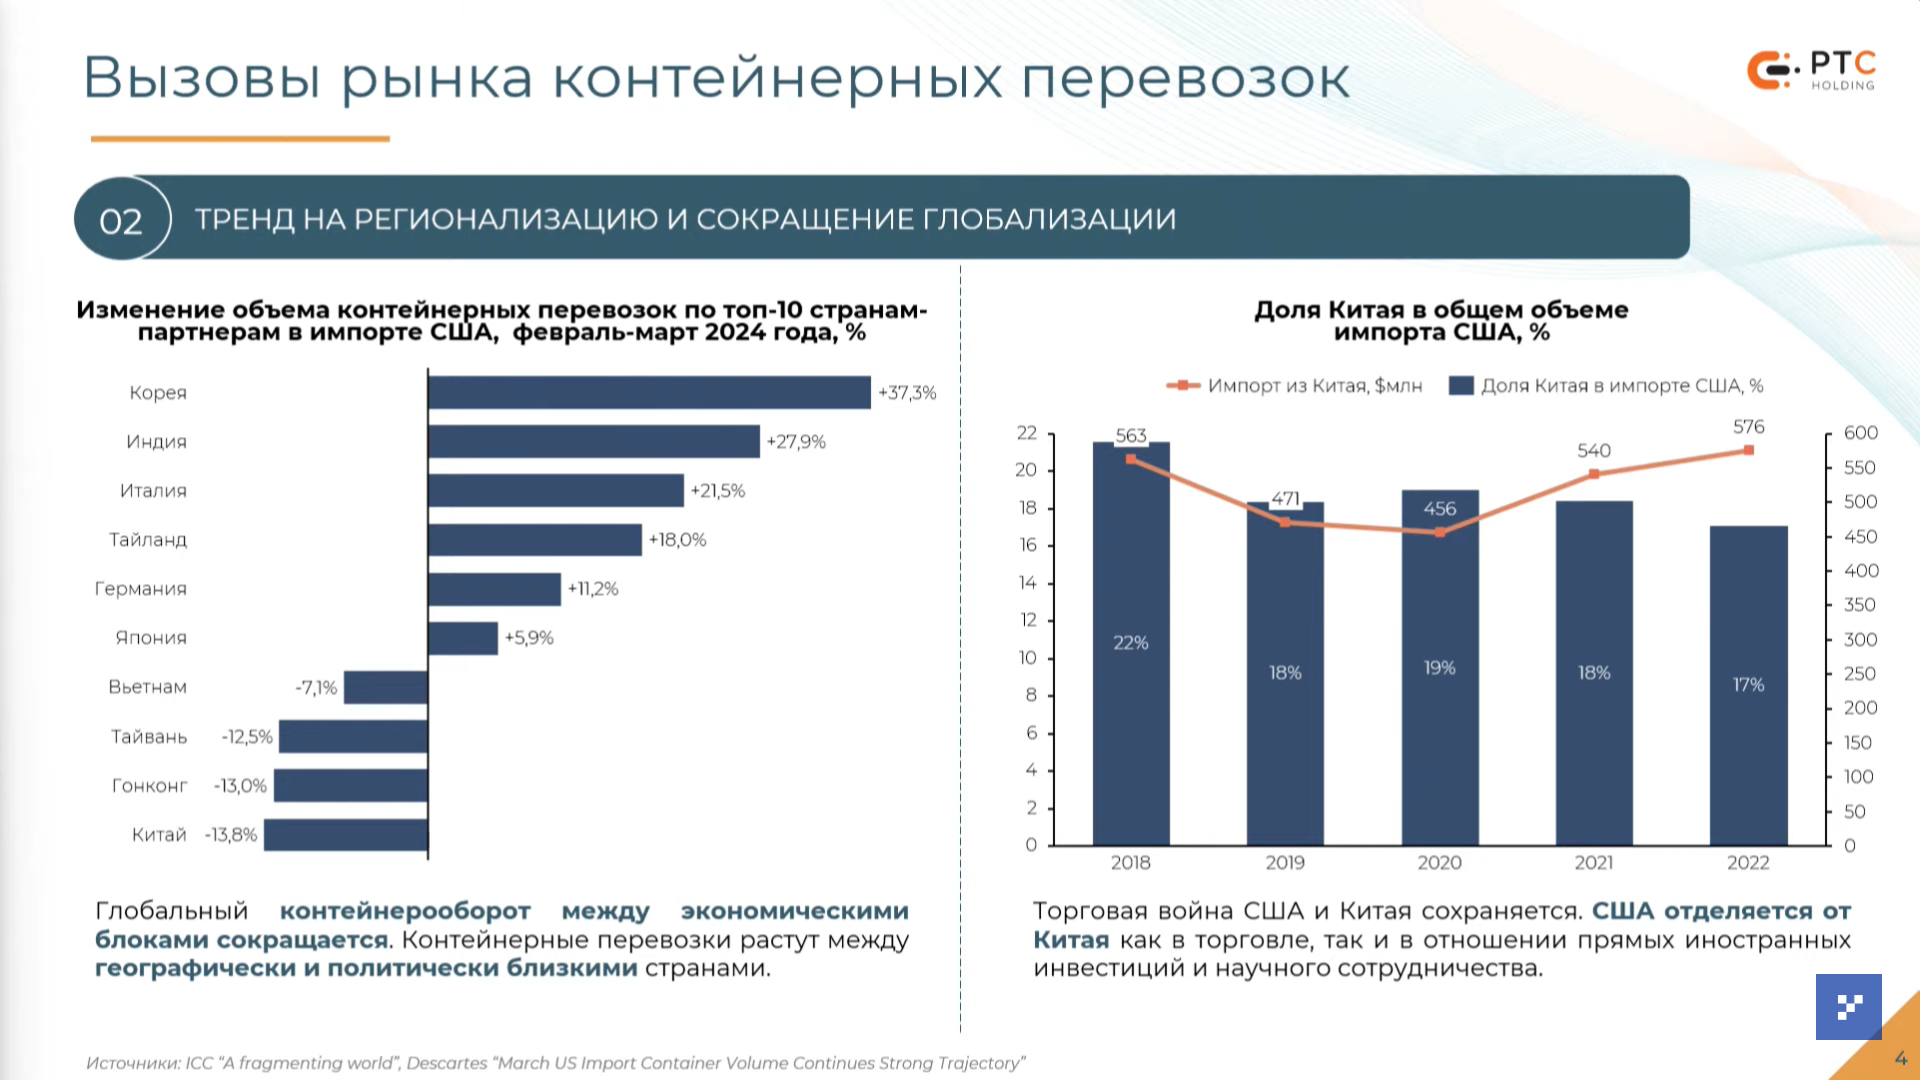 Логистических активов в Казахстане продолжает не хватать 2953194 — Kapital.kz 